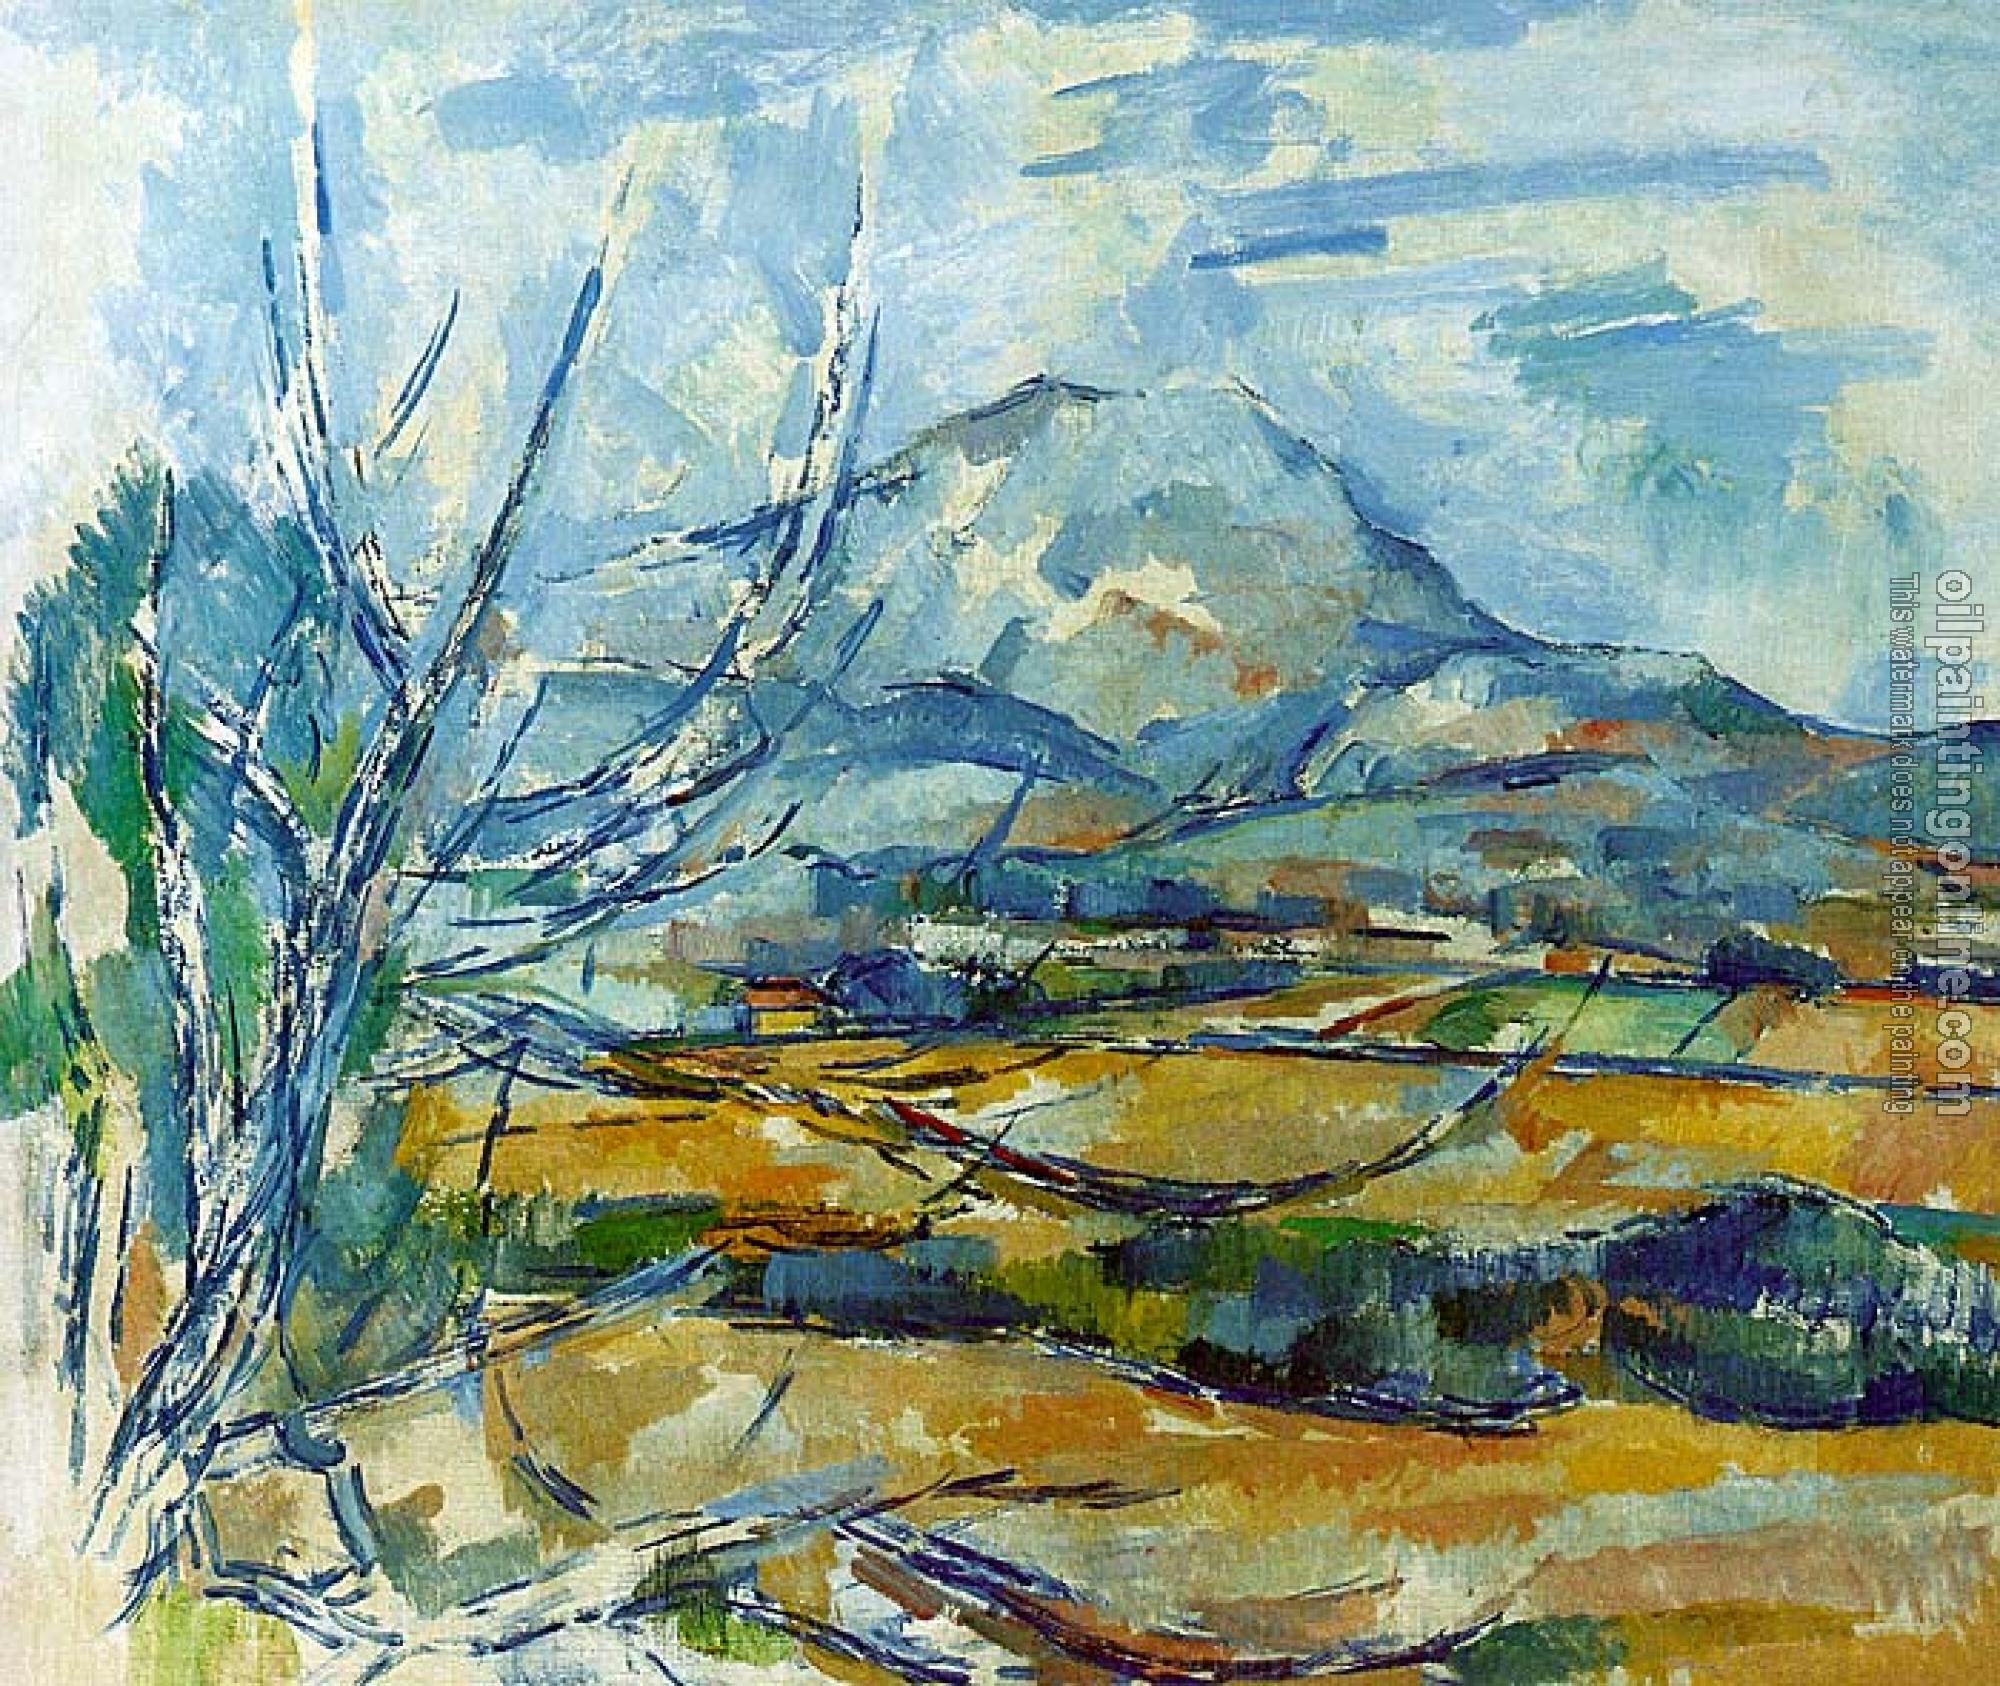 Cezanne, Paul - Montagne Sainte-Victoire